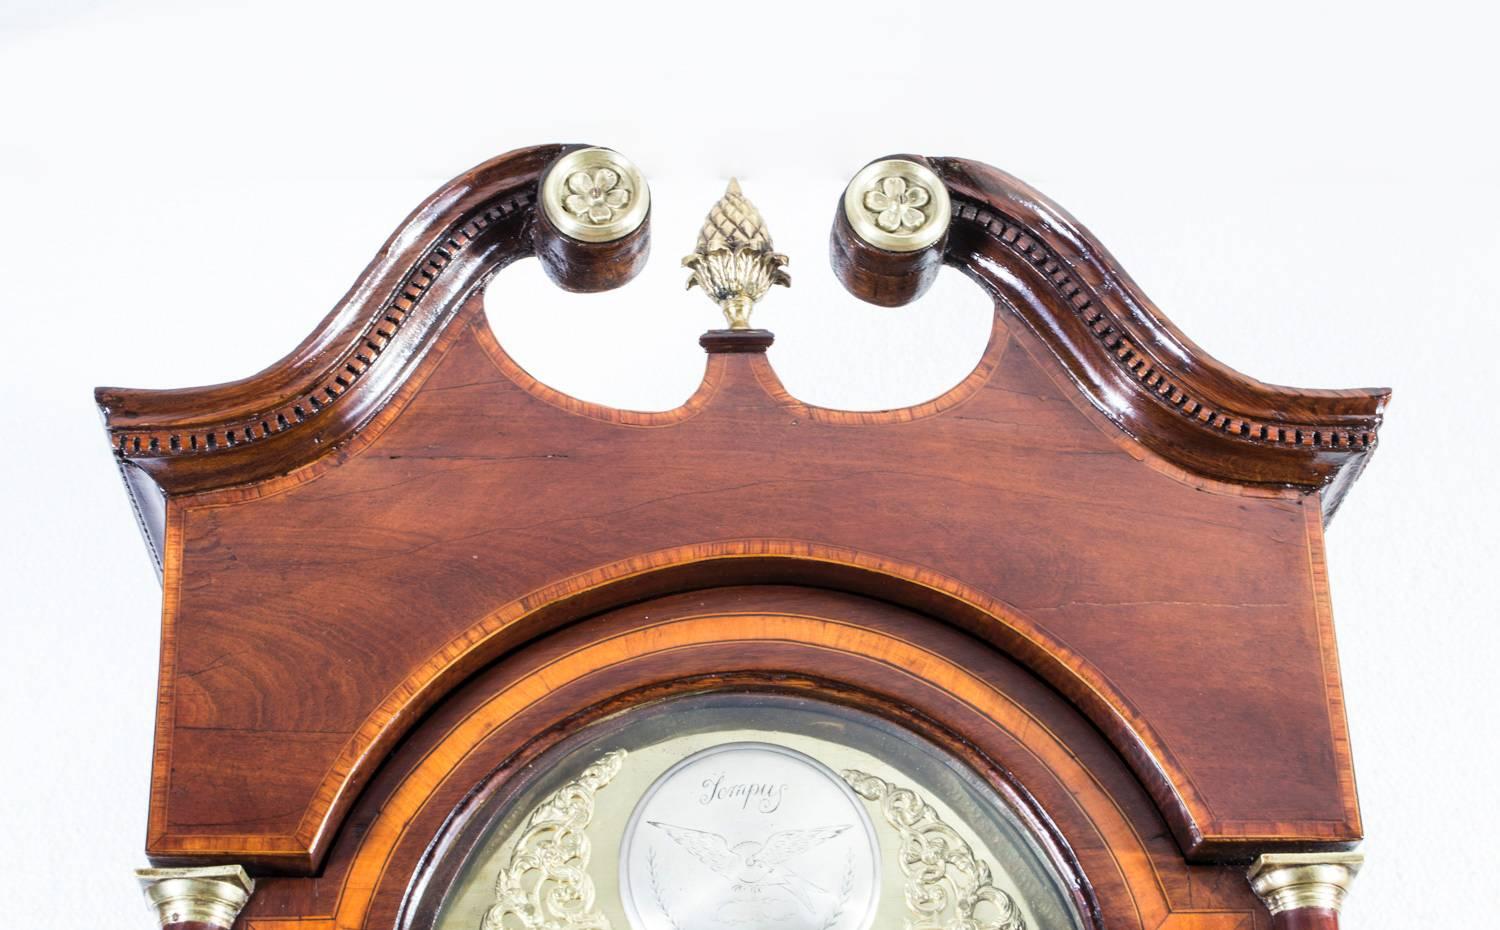 Acajou horloge de parquet du 19e siècle avec sonnerie de cloches